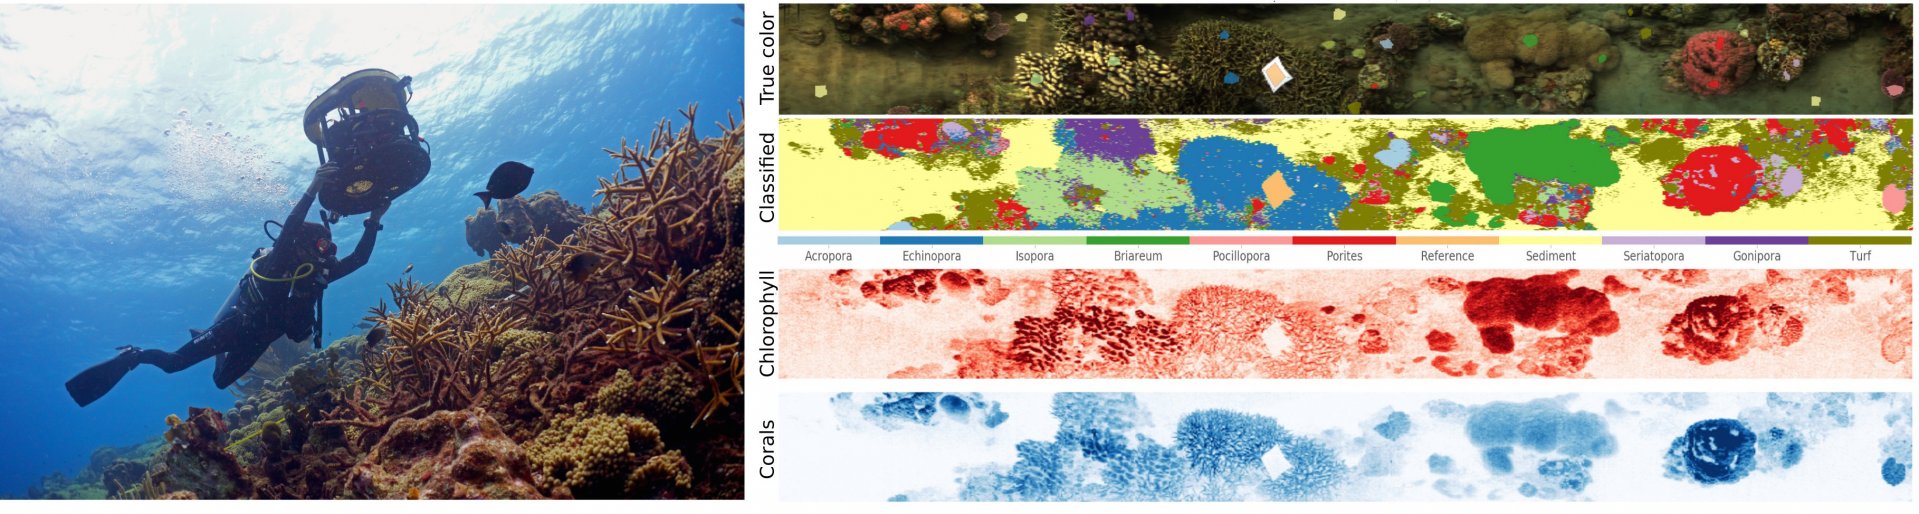 Der HyperDiver liefert Bildaufnahmen und Hyperspektralbilder eines Korallenriffs, die zur Analyse der Artenvielfalt und des Gesundheitszustandes des Riffs genutzt werden. 